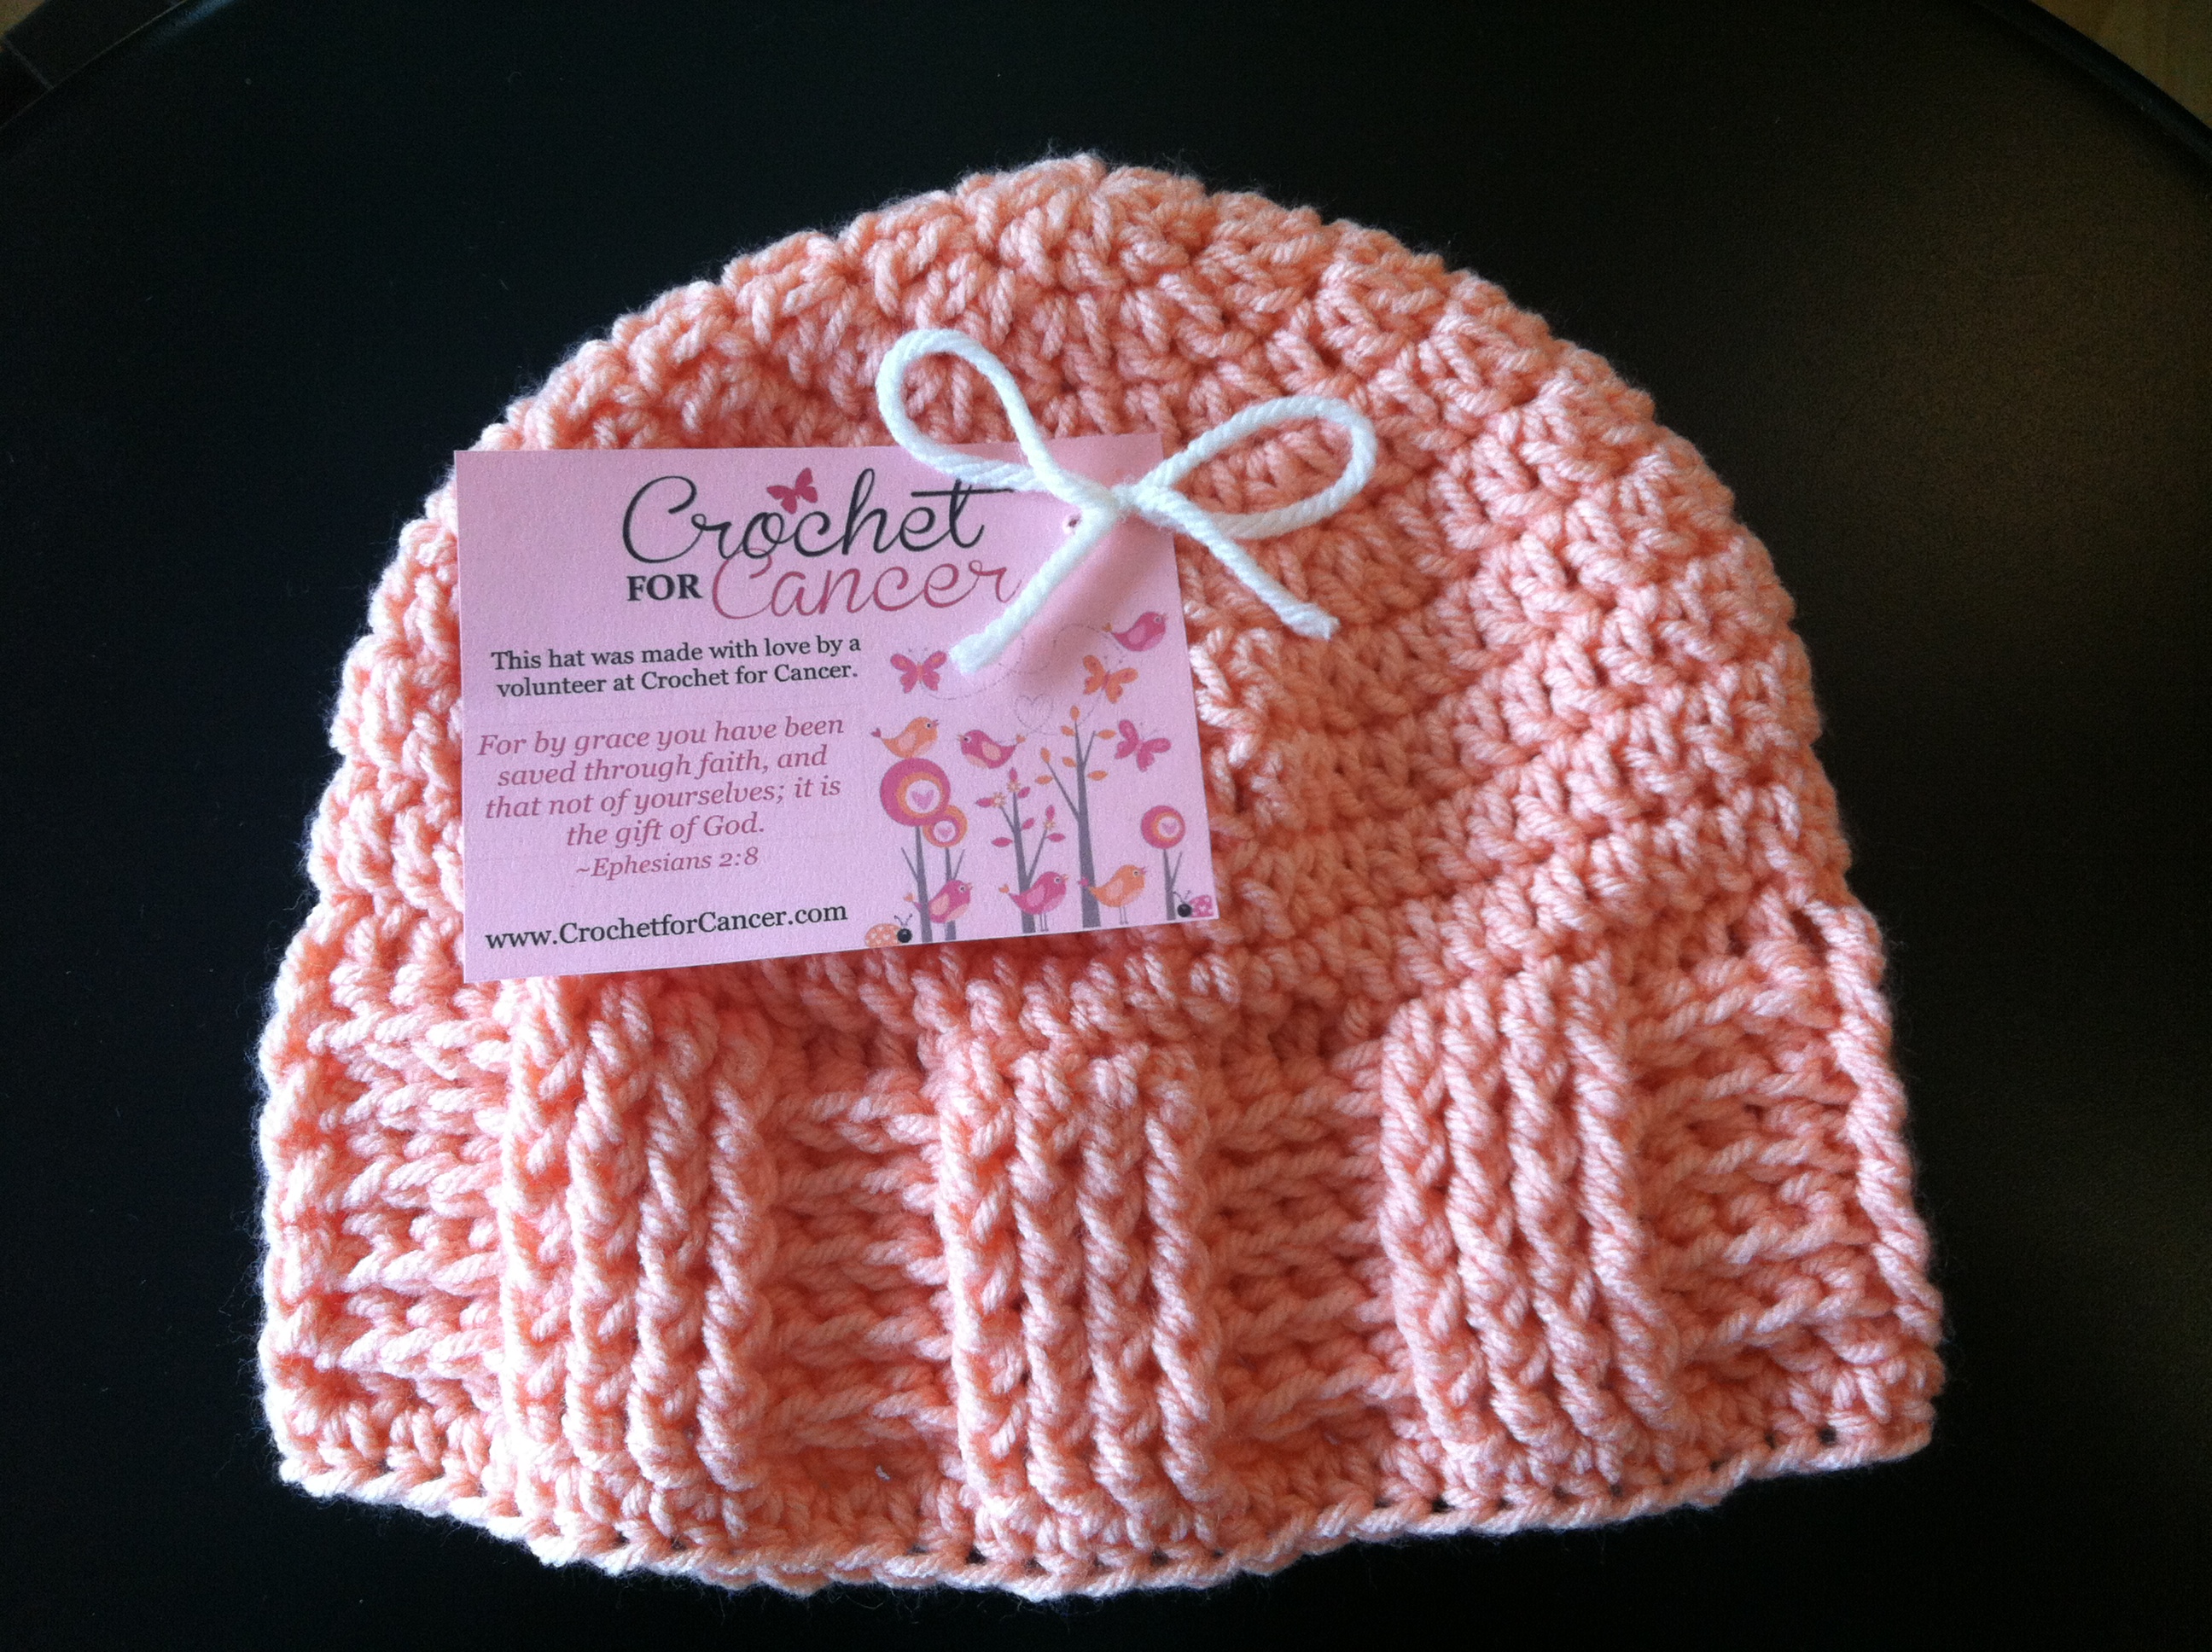 Crochet For Cancer’s Basketweave Vertical Stripe Cap - Crochet For